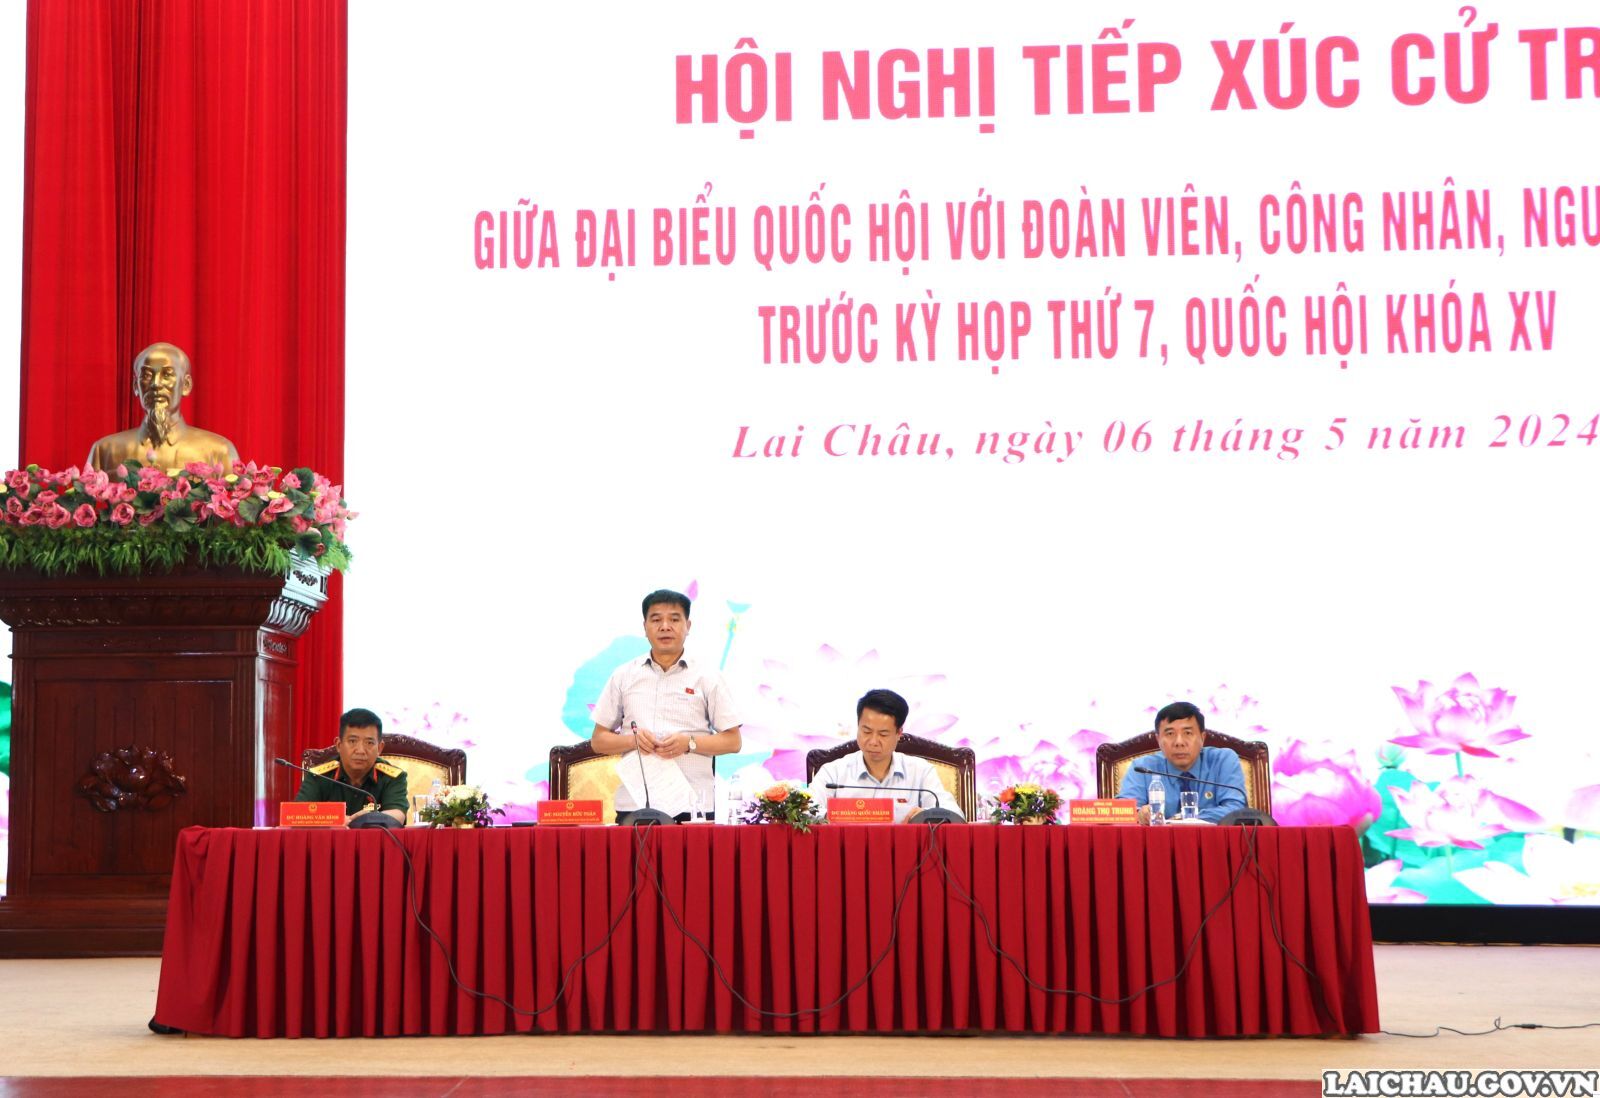 Đoàn Đại biểu Quốc hội tỉnh Lai Châu tiếp xúc cử tri chuyên đề với đoàn viên, công nhân, người lao động